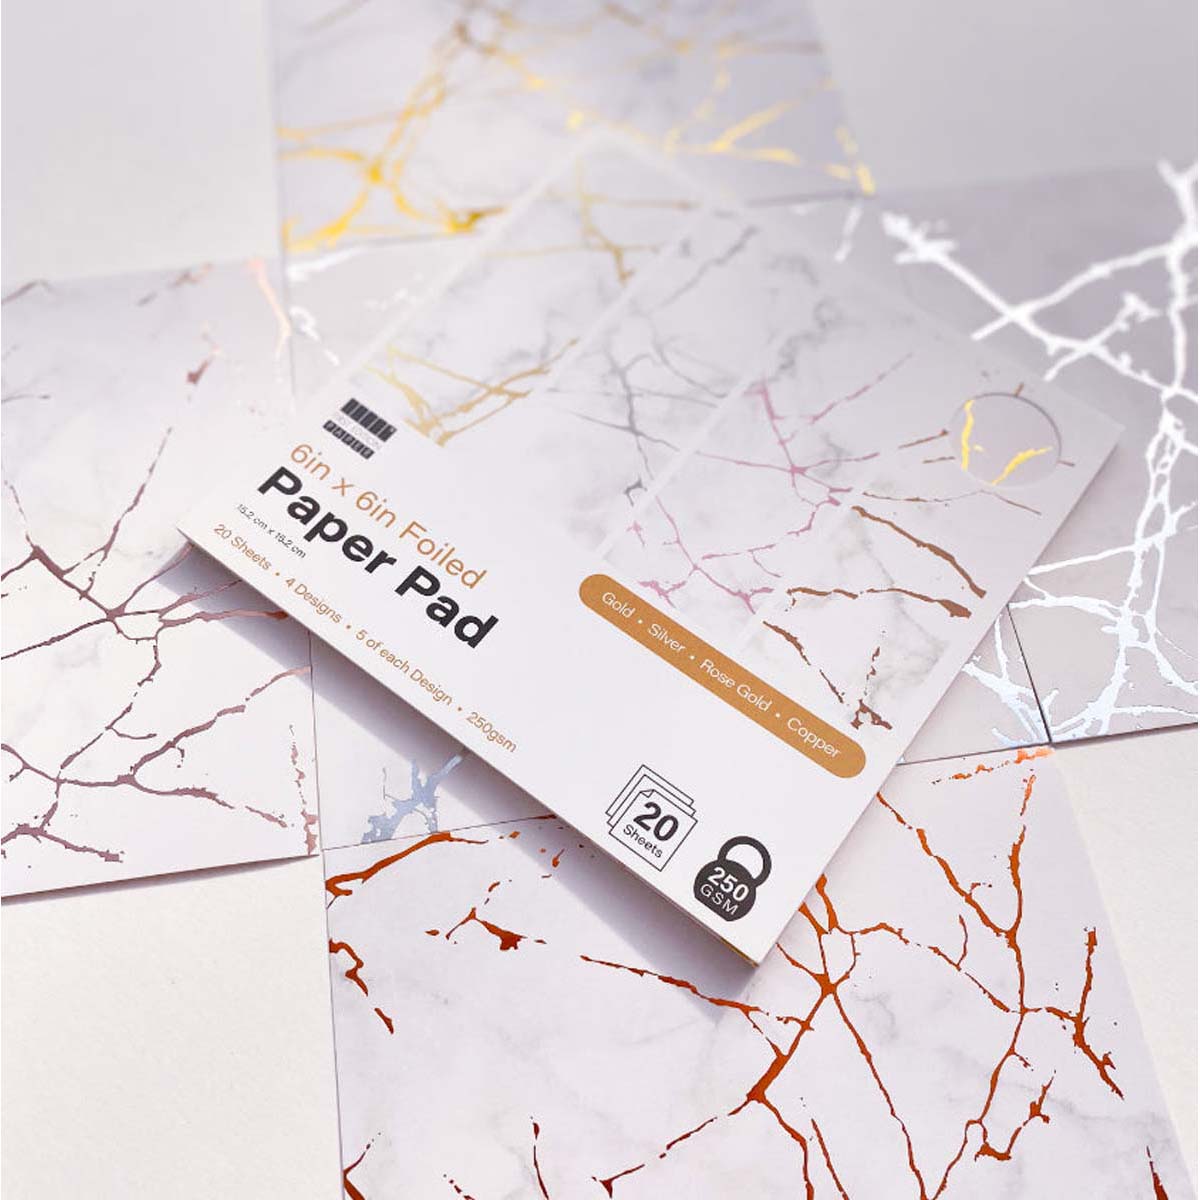 Première édition - 6 pouces x 6 pouces de papier en papier blanc blanc 250gsm